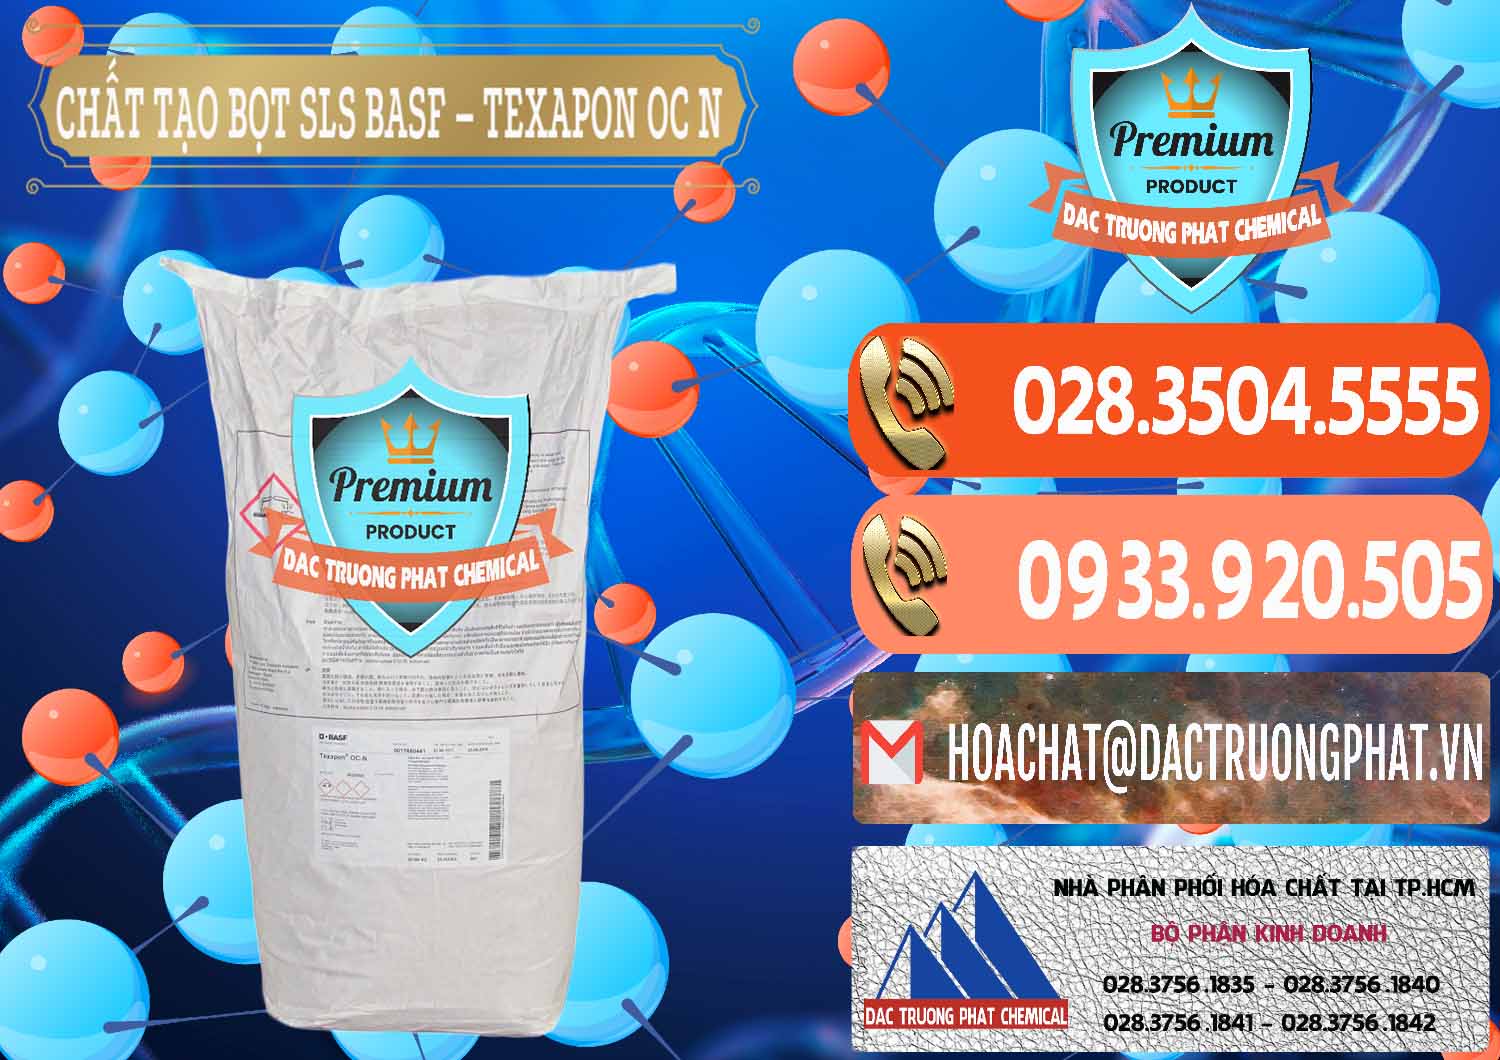 Công ty chuyên kinh doanh _ bán Chất Tạo Bọt SLS - Sodium Lauryl Sulfate BASF Texapon OC N - 0049 - Công ty chuyên bán - cung cấp hóa chất tại TP.HCM - hoachatmientay.com